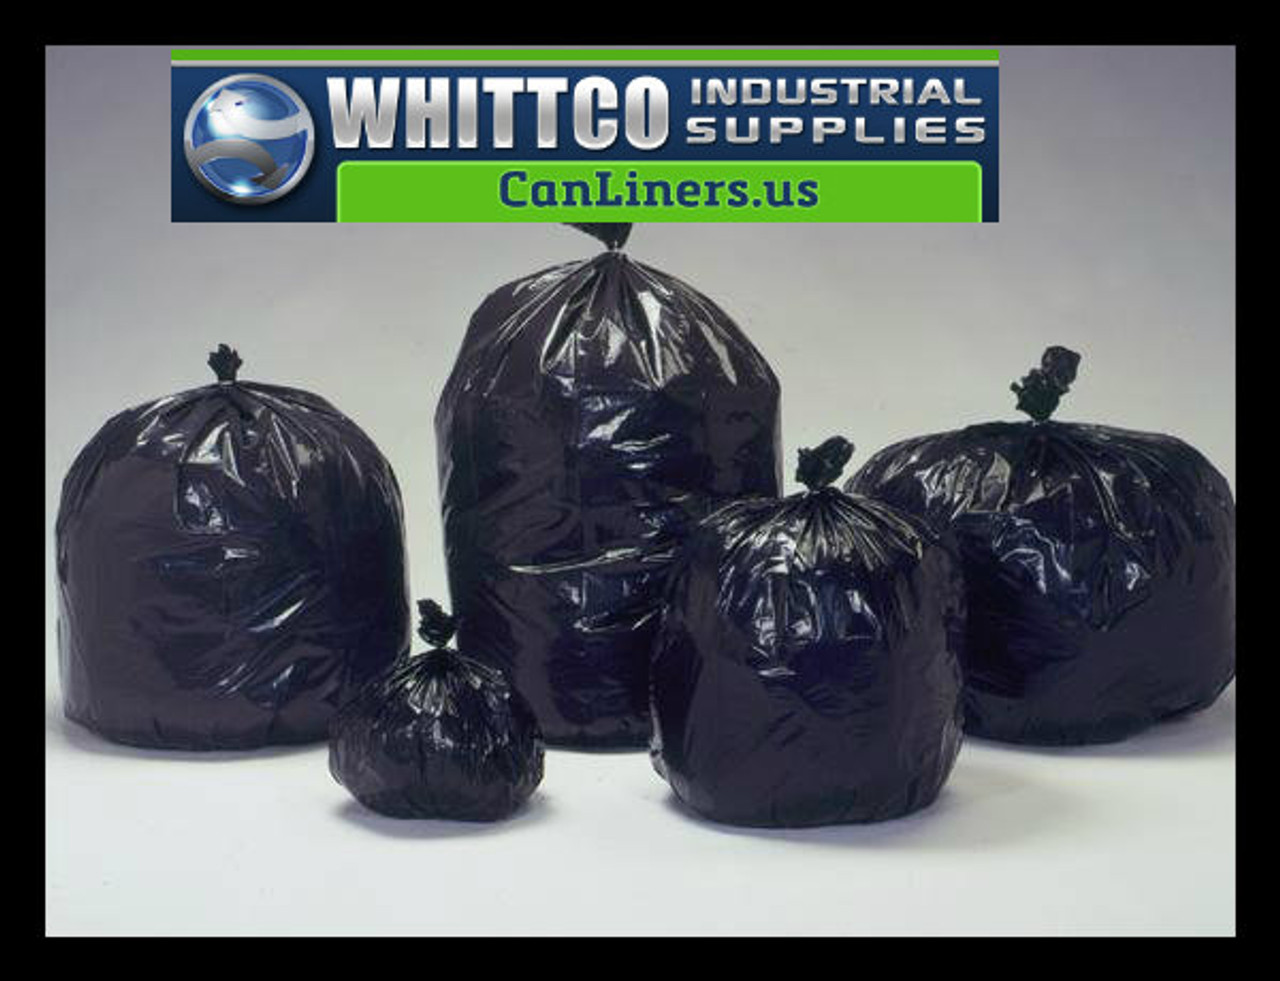 Global Industrial™ Heavy Duty Black Trash Bags - 20-30 Gal, 1.5 Mil, 100  Bags/Case